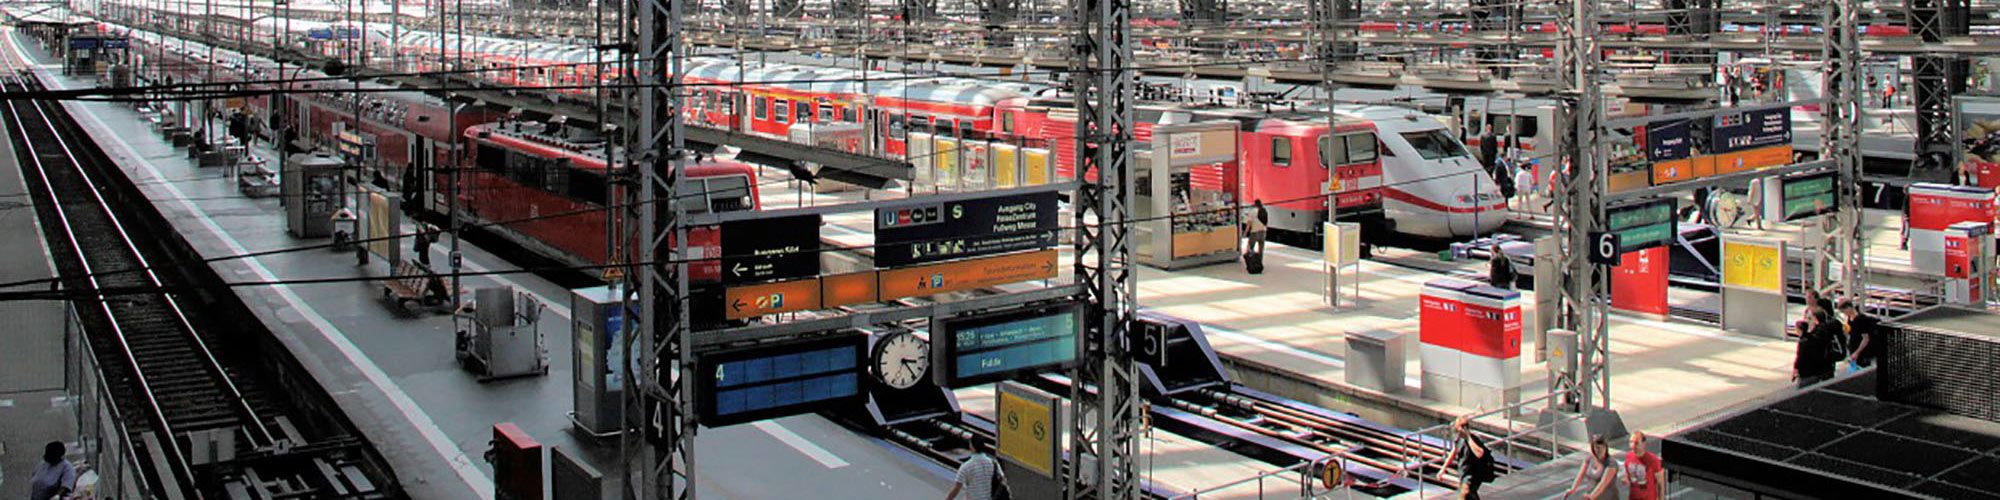 Sécurité électrique pour une exploitation des transports ferroviaires exempte de perturbations